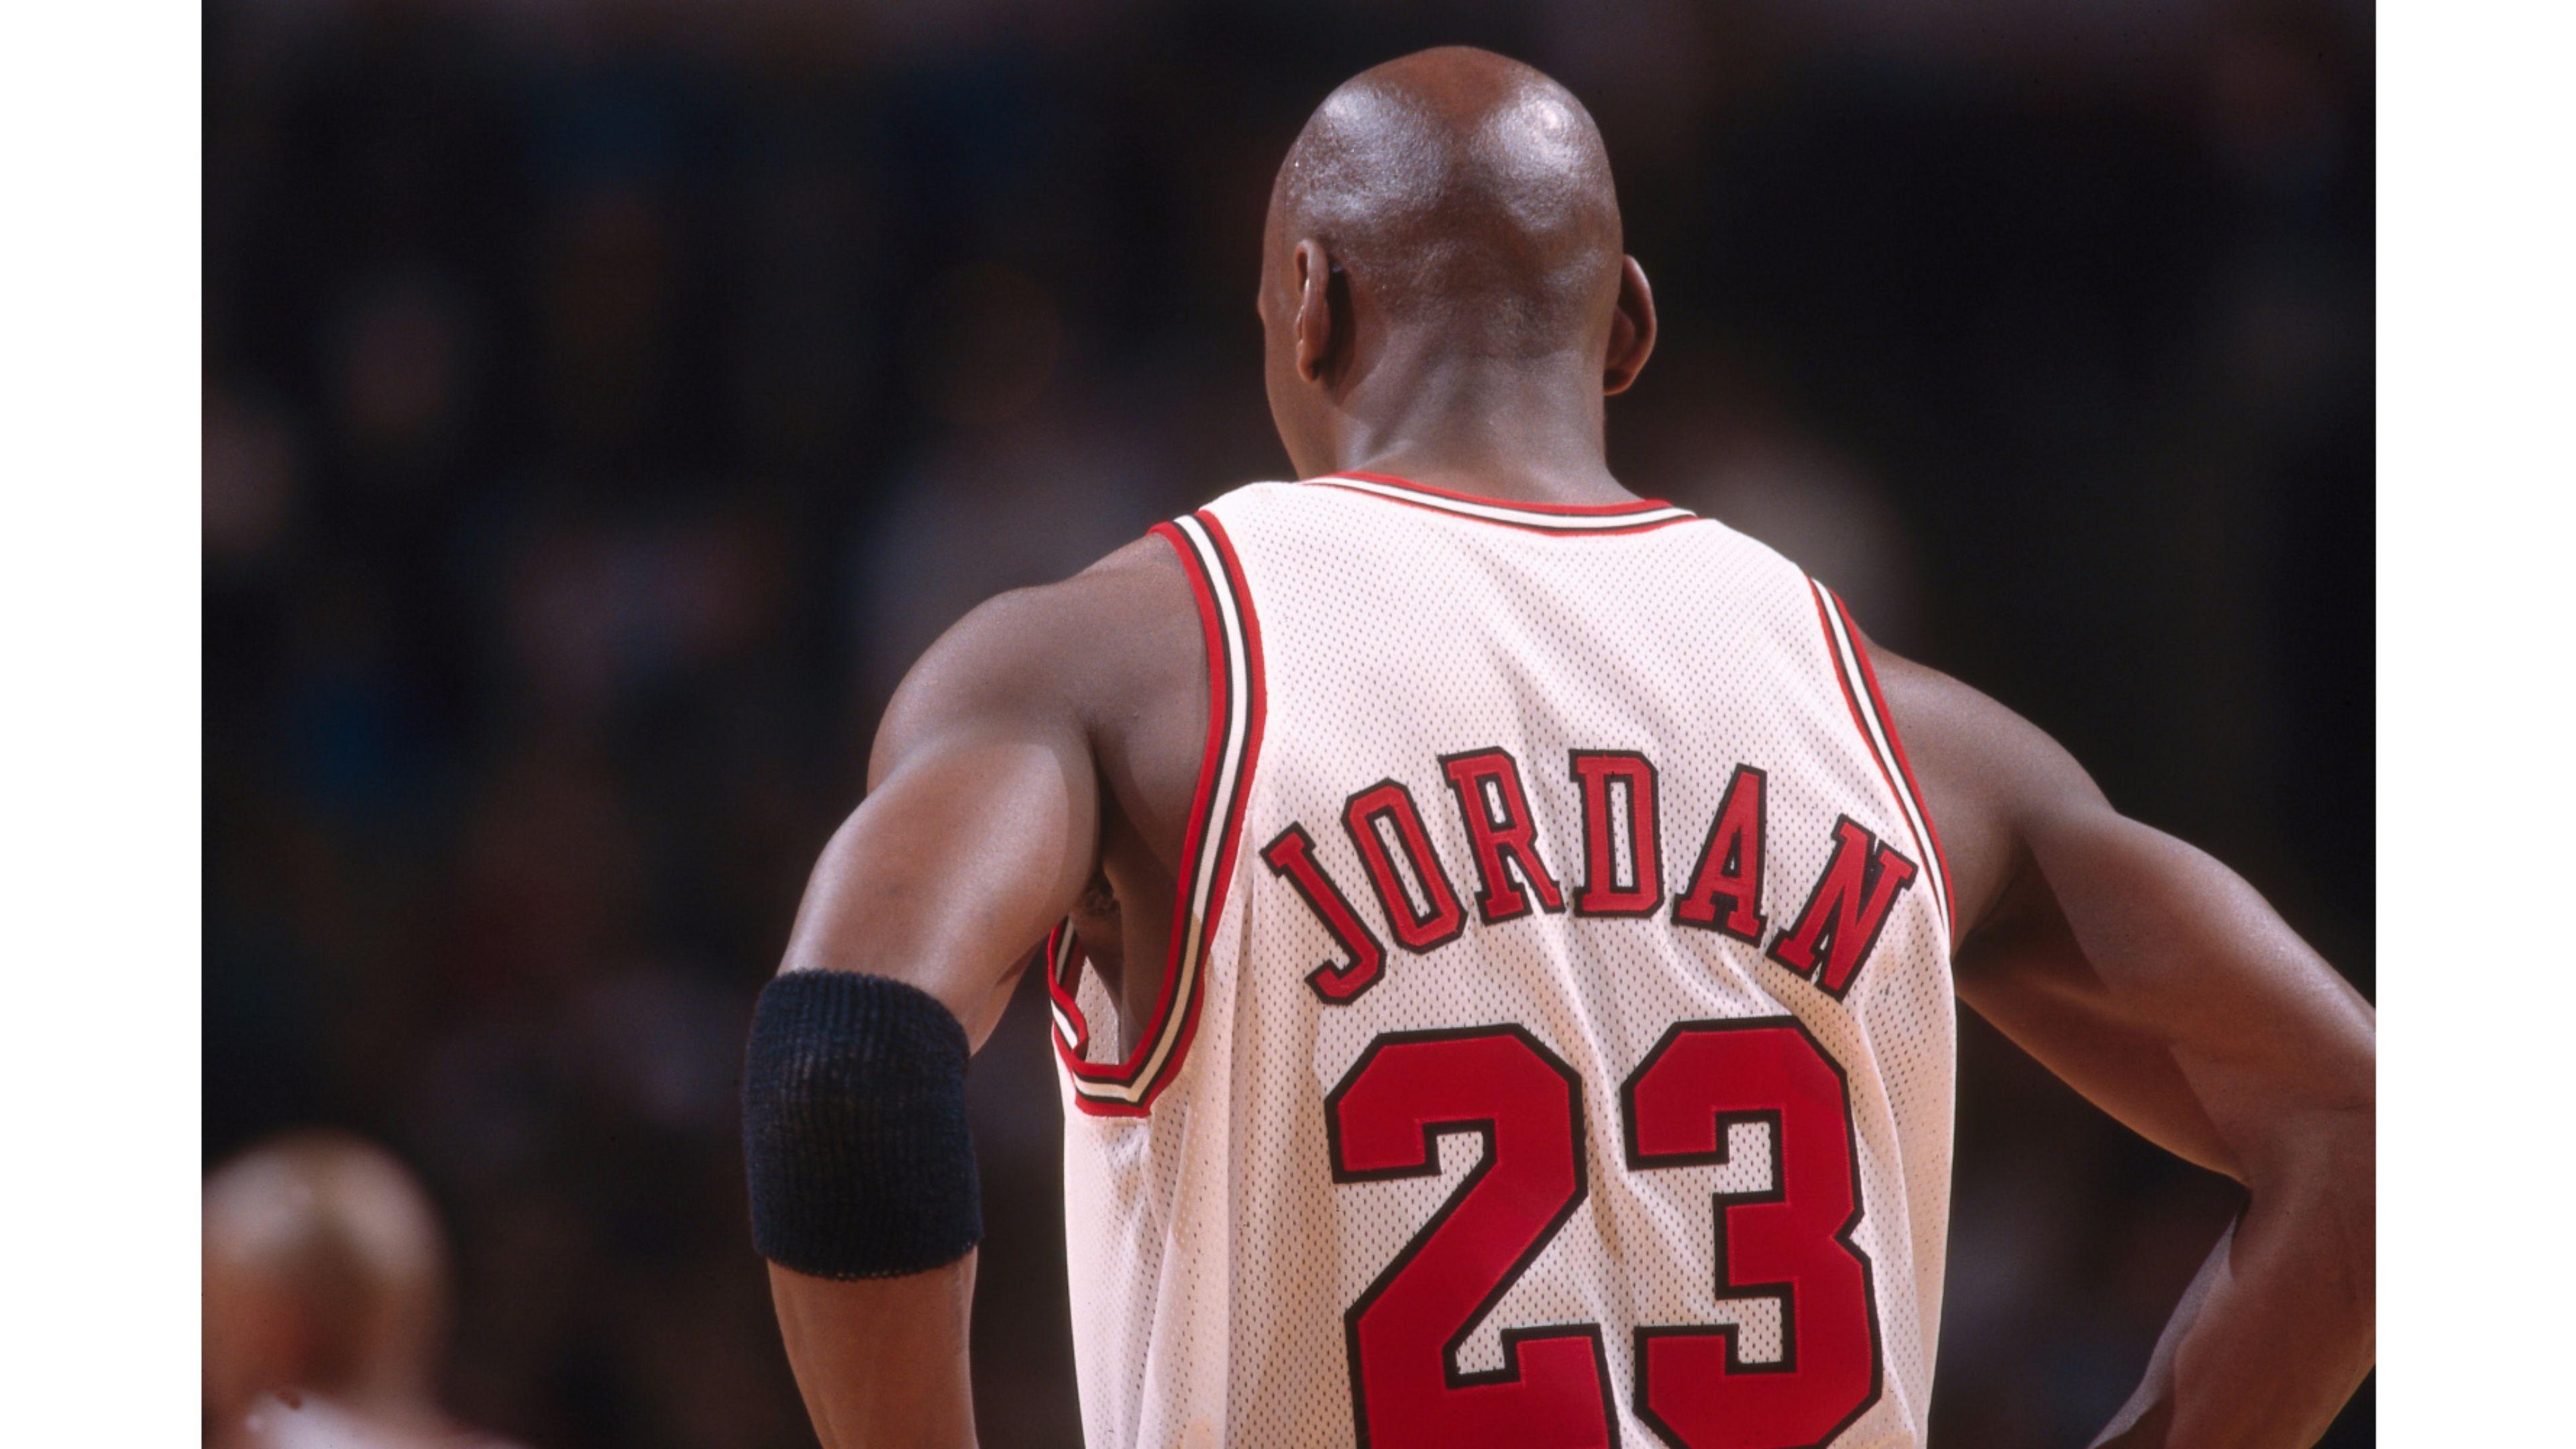 Jordan 23 Michael Jordan 4K Wallpaper. Free 4K Wallpaper